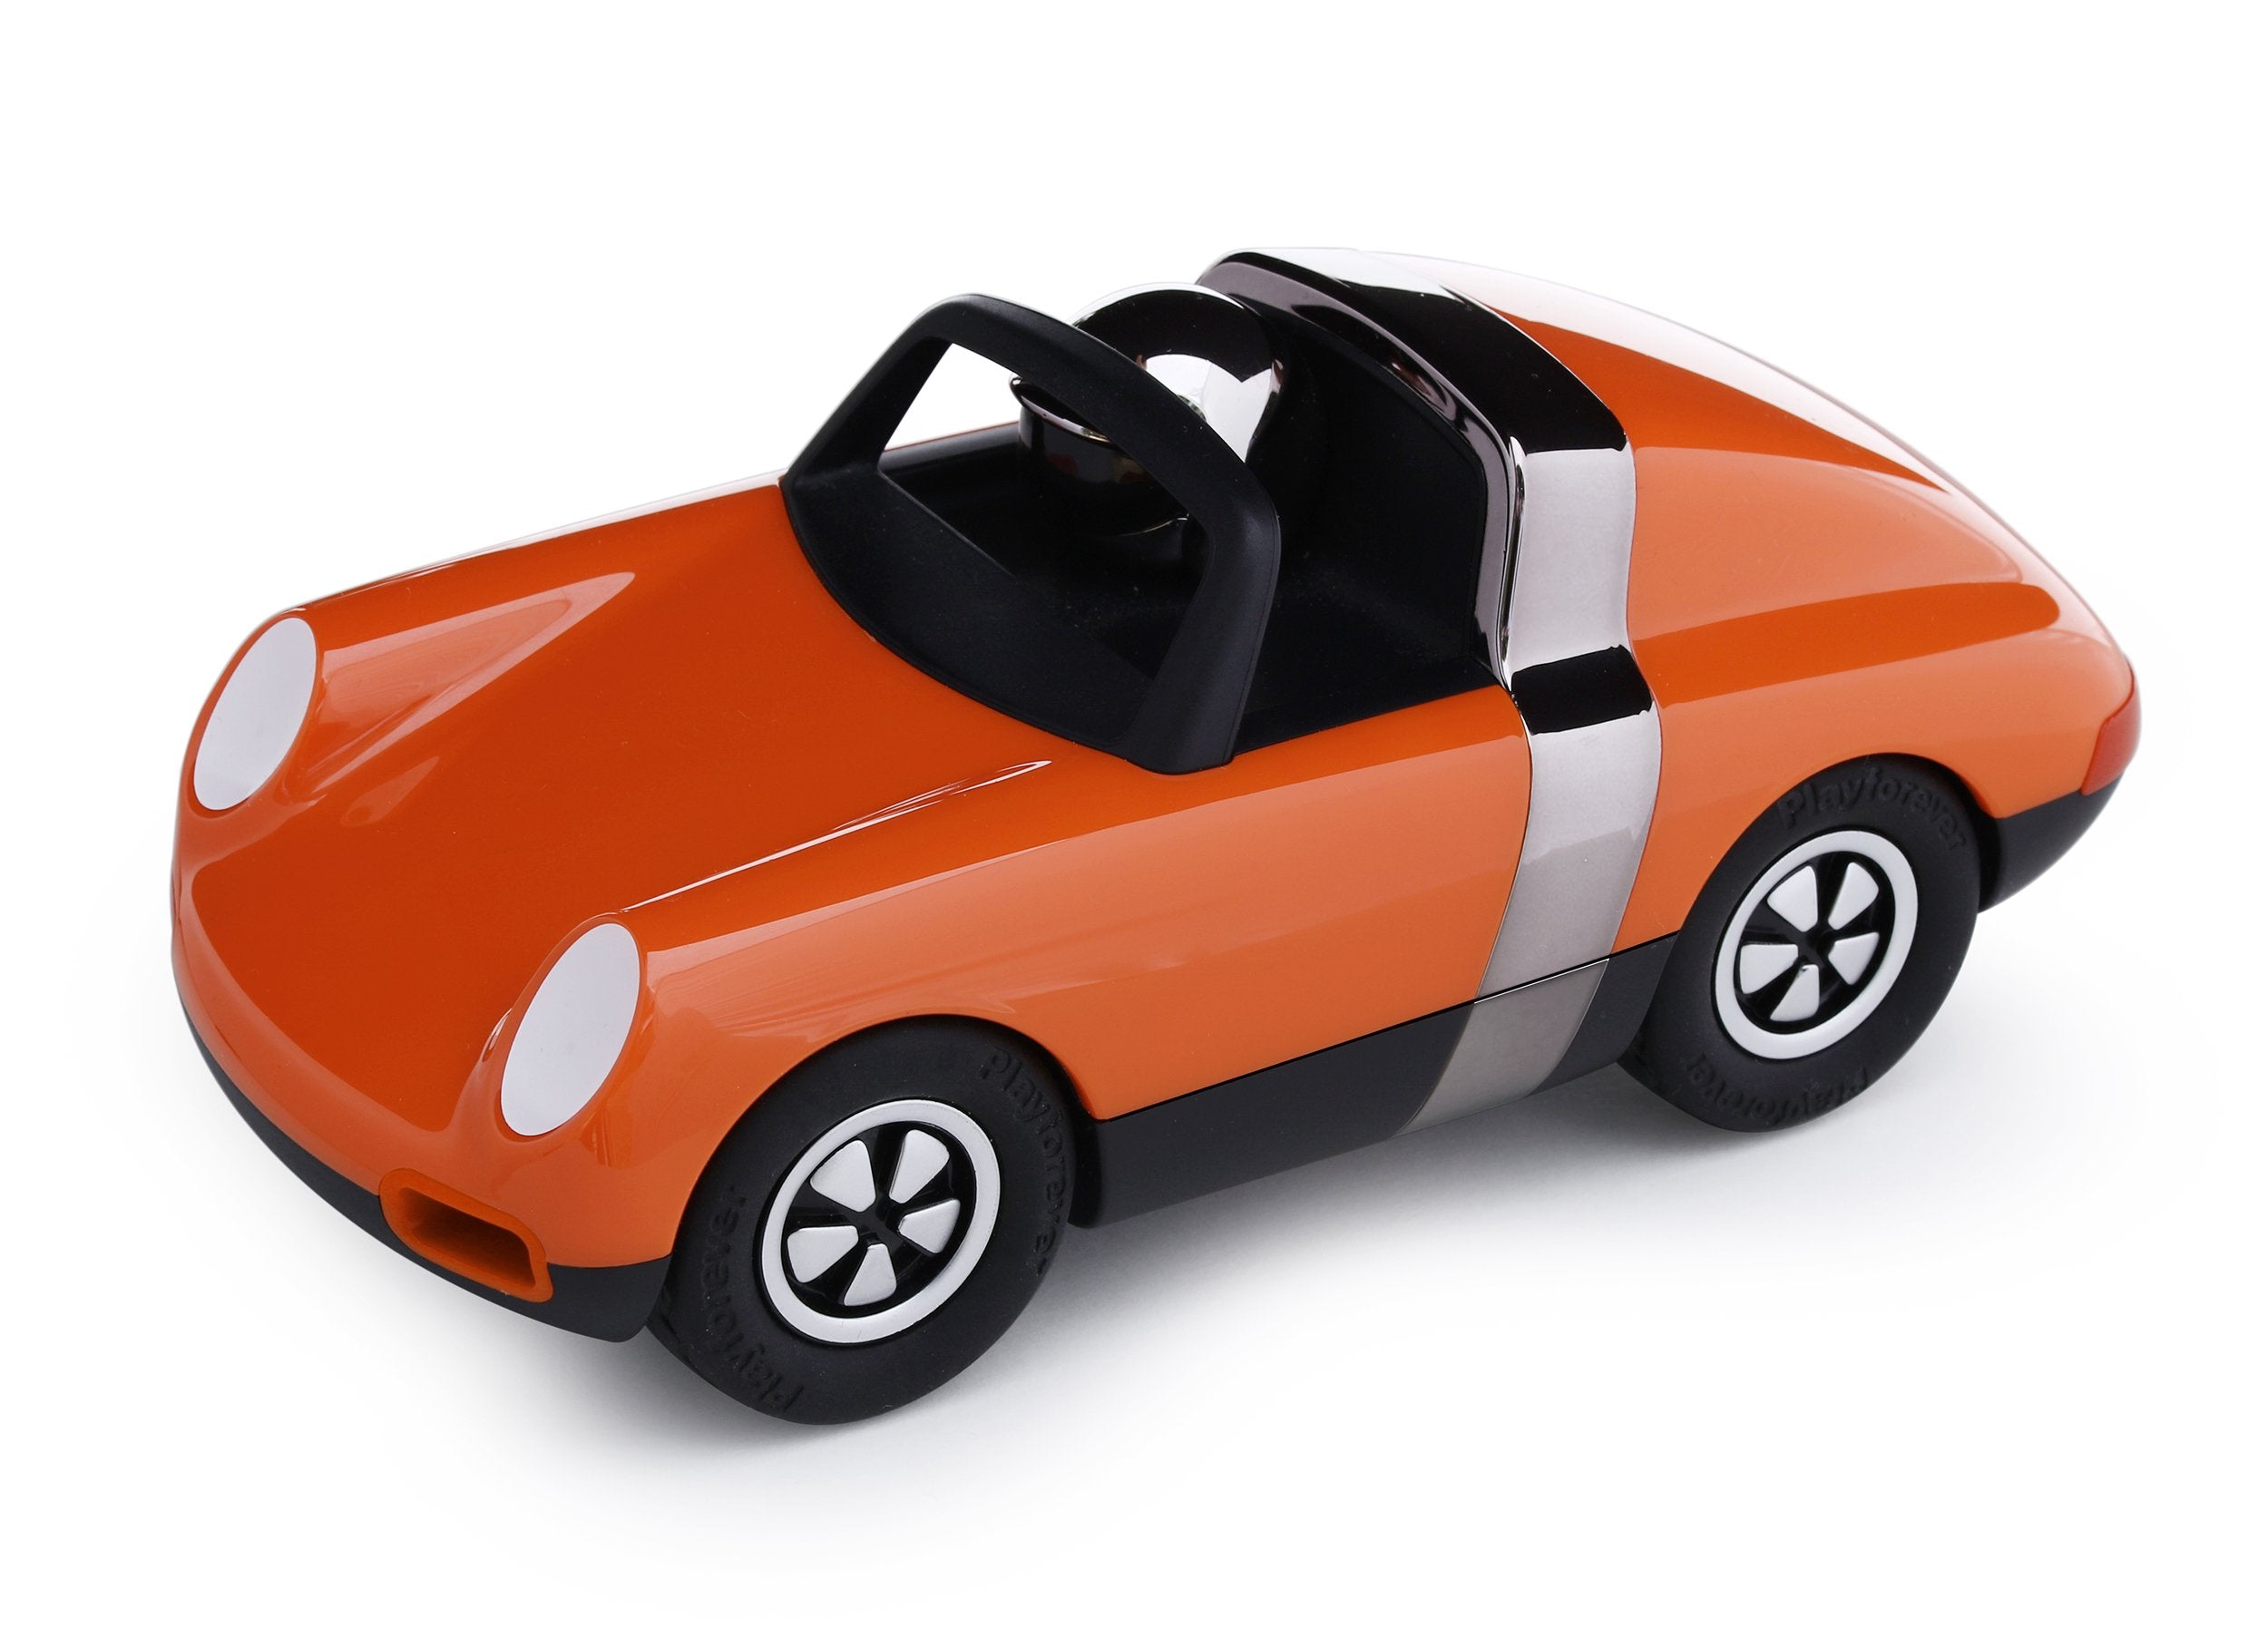 Playforever Luft Biba - Stilvolles Spielzeugauto inspiriert von einem ikonischen Klassiker